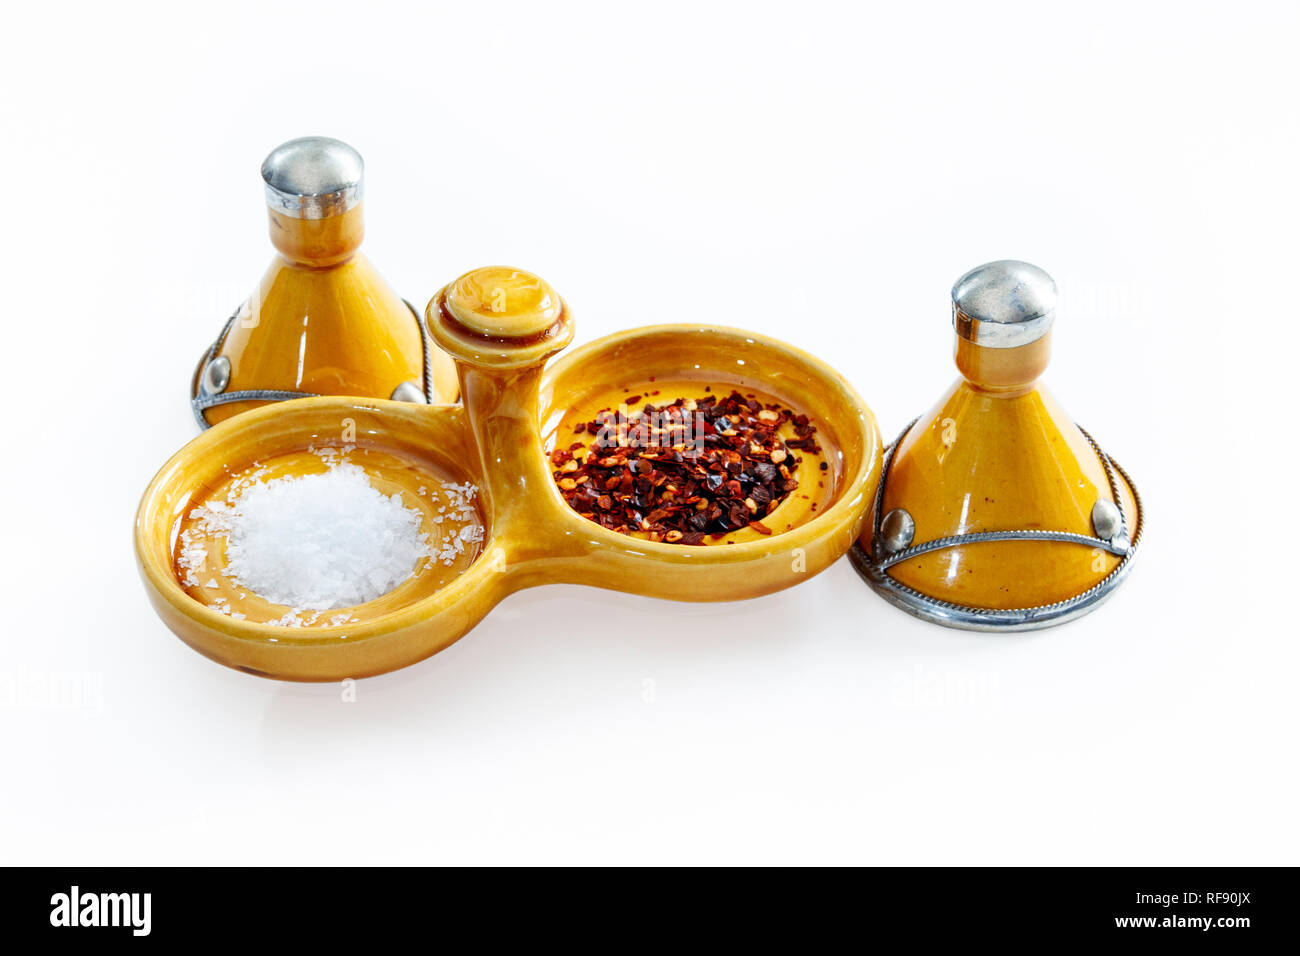 Arancione tradizionale marocchino smaltata ceramica sale e pepe piatto con sale marino e peperoncino in scaglie su sfondo bianco Foto Stock